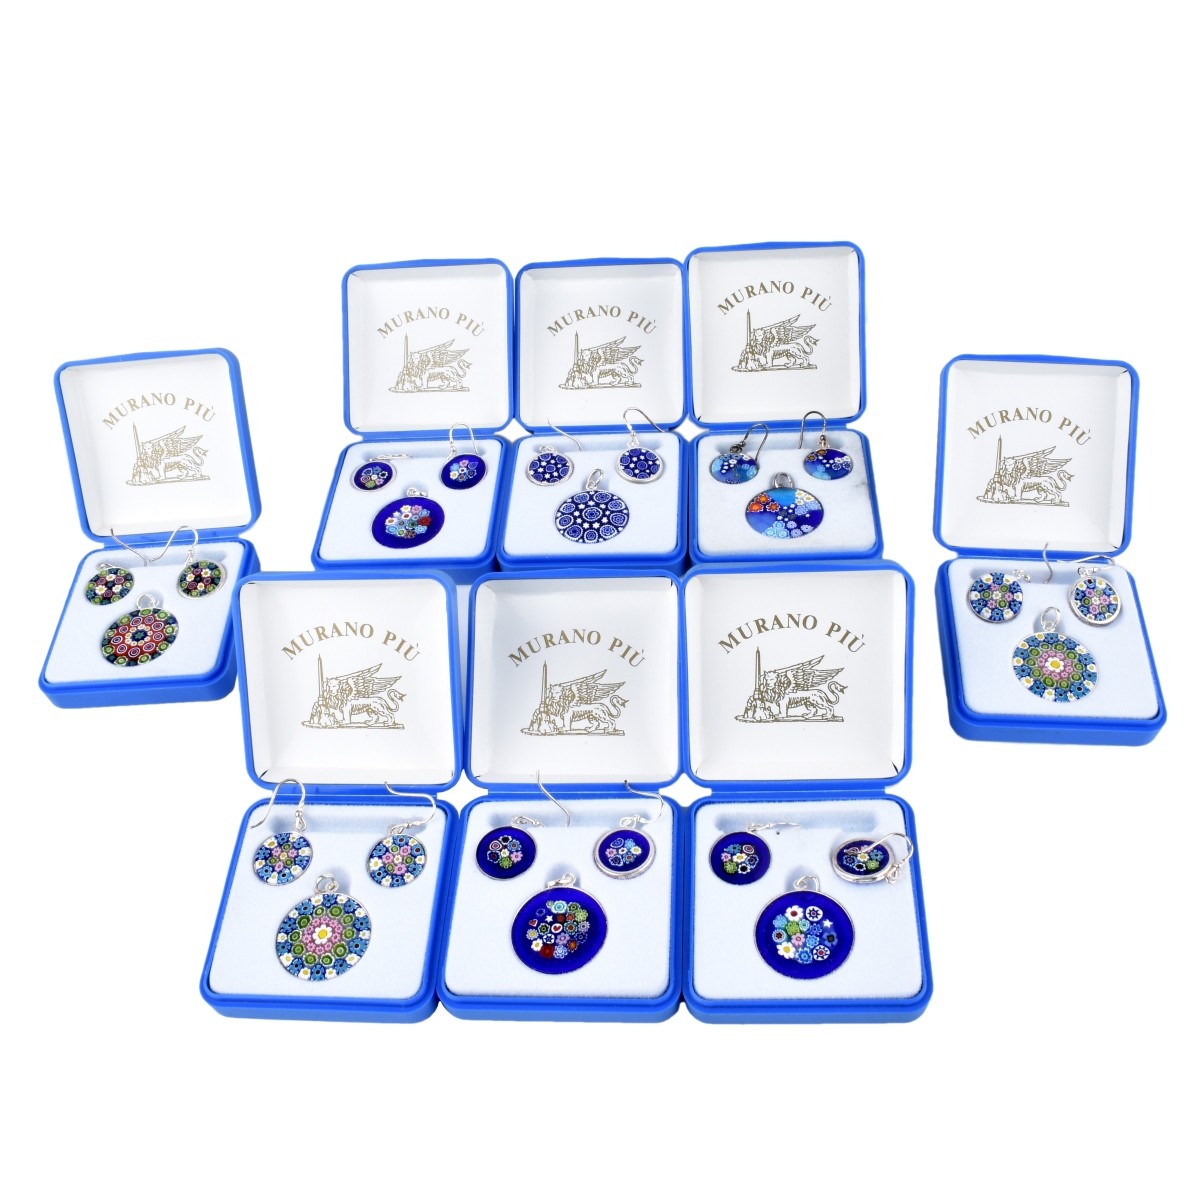 8 Murano Jewelry Sets